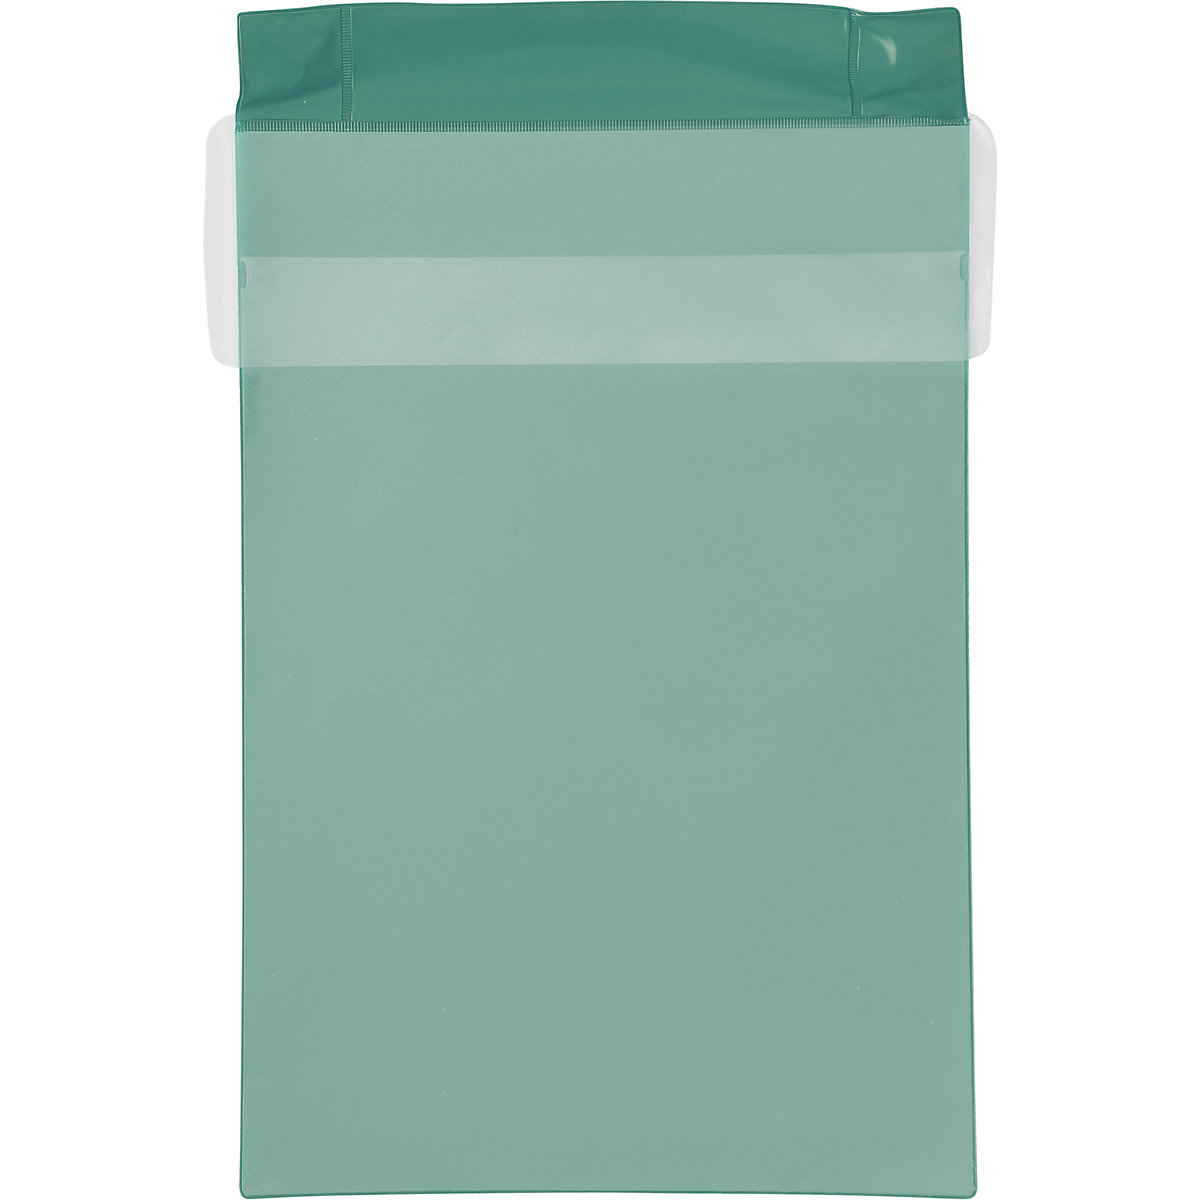 Magnetni žep Neodym, pokončen format, s pokrovom za zaščito pred dežjem, DE 25 kosov, zelene barve, DIN A4, od 1 DE-5